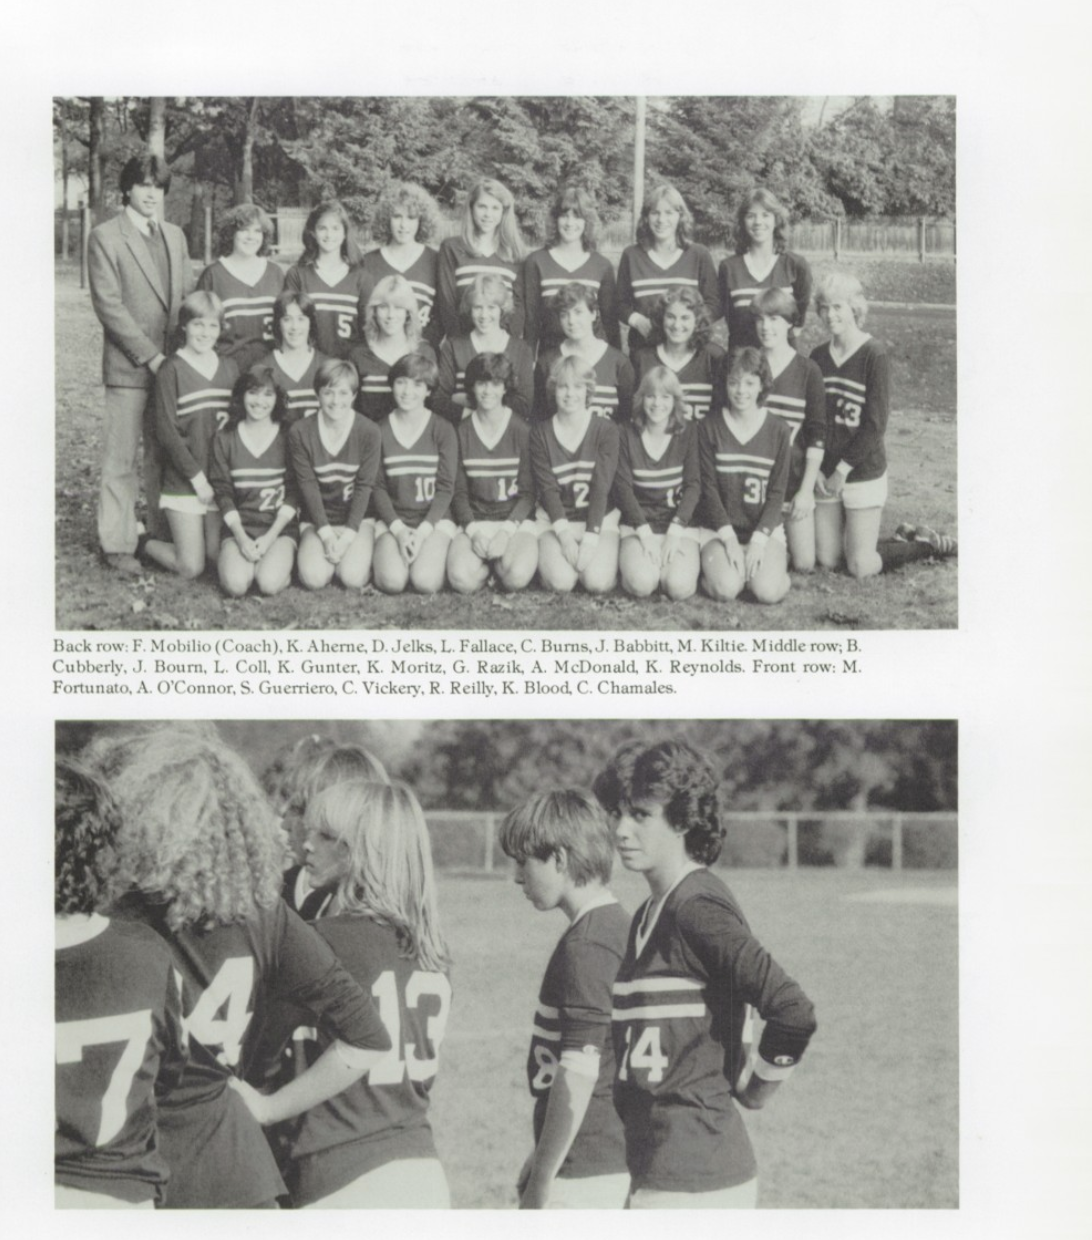 1984 Girls’ Soccer Team